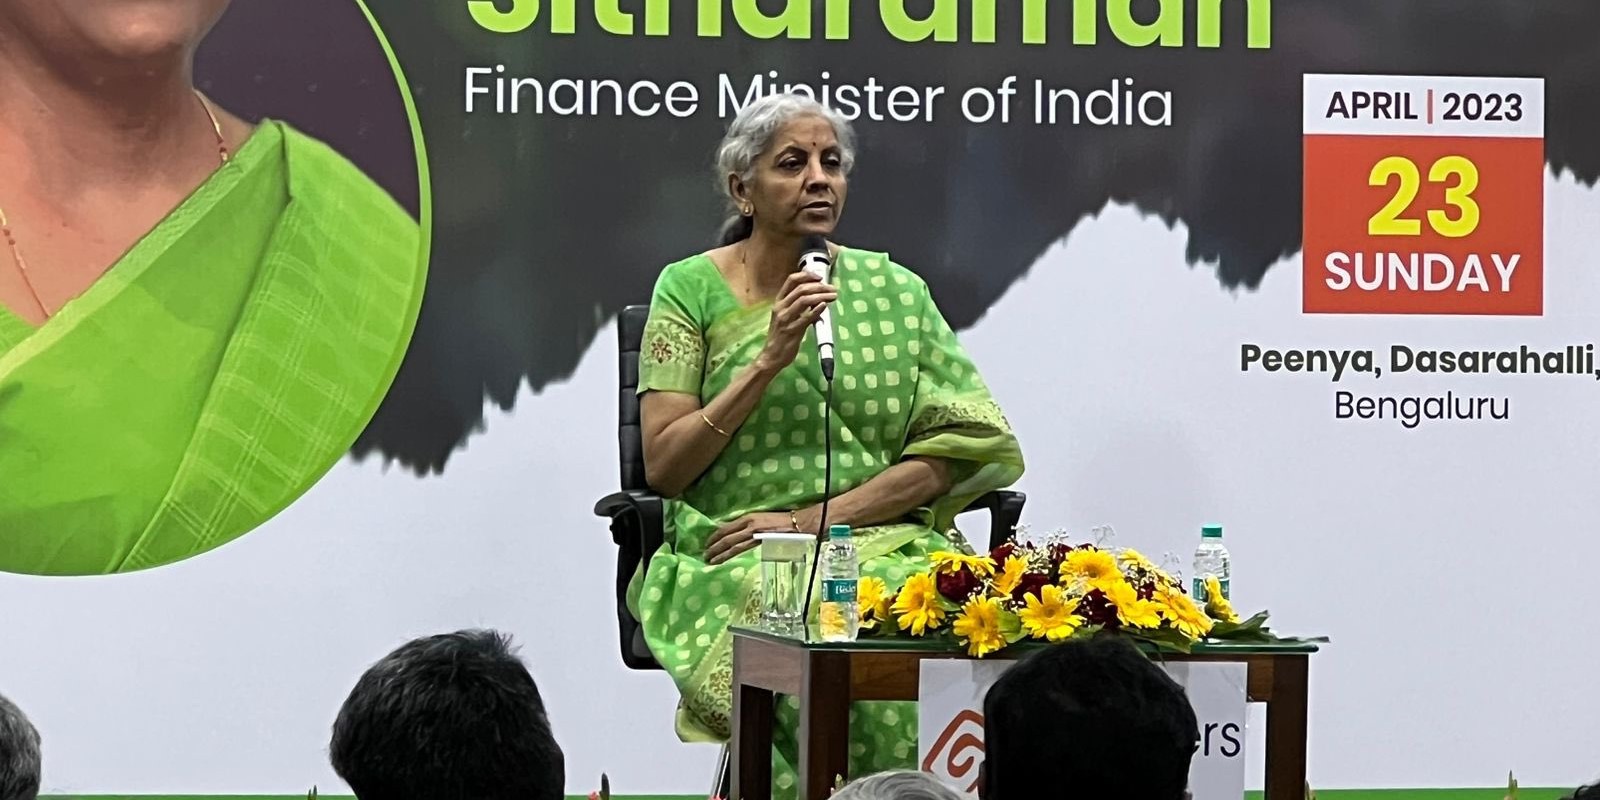 Nirmala Sitharaman speaking in Bengaluru. (Twitter)